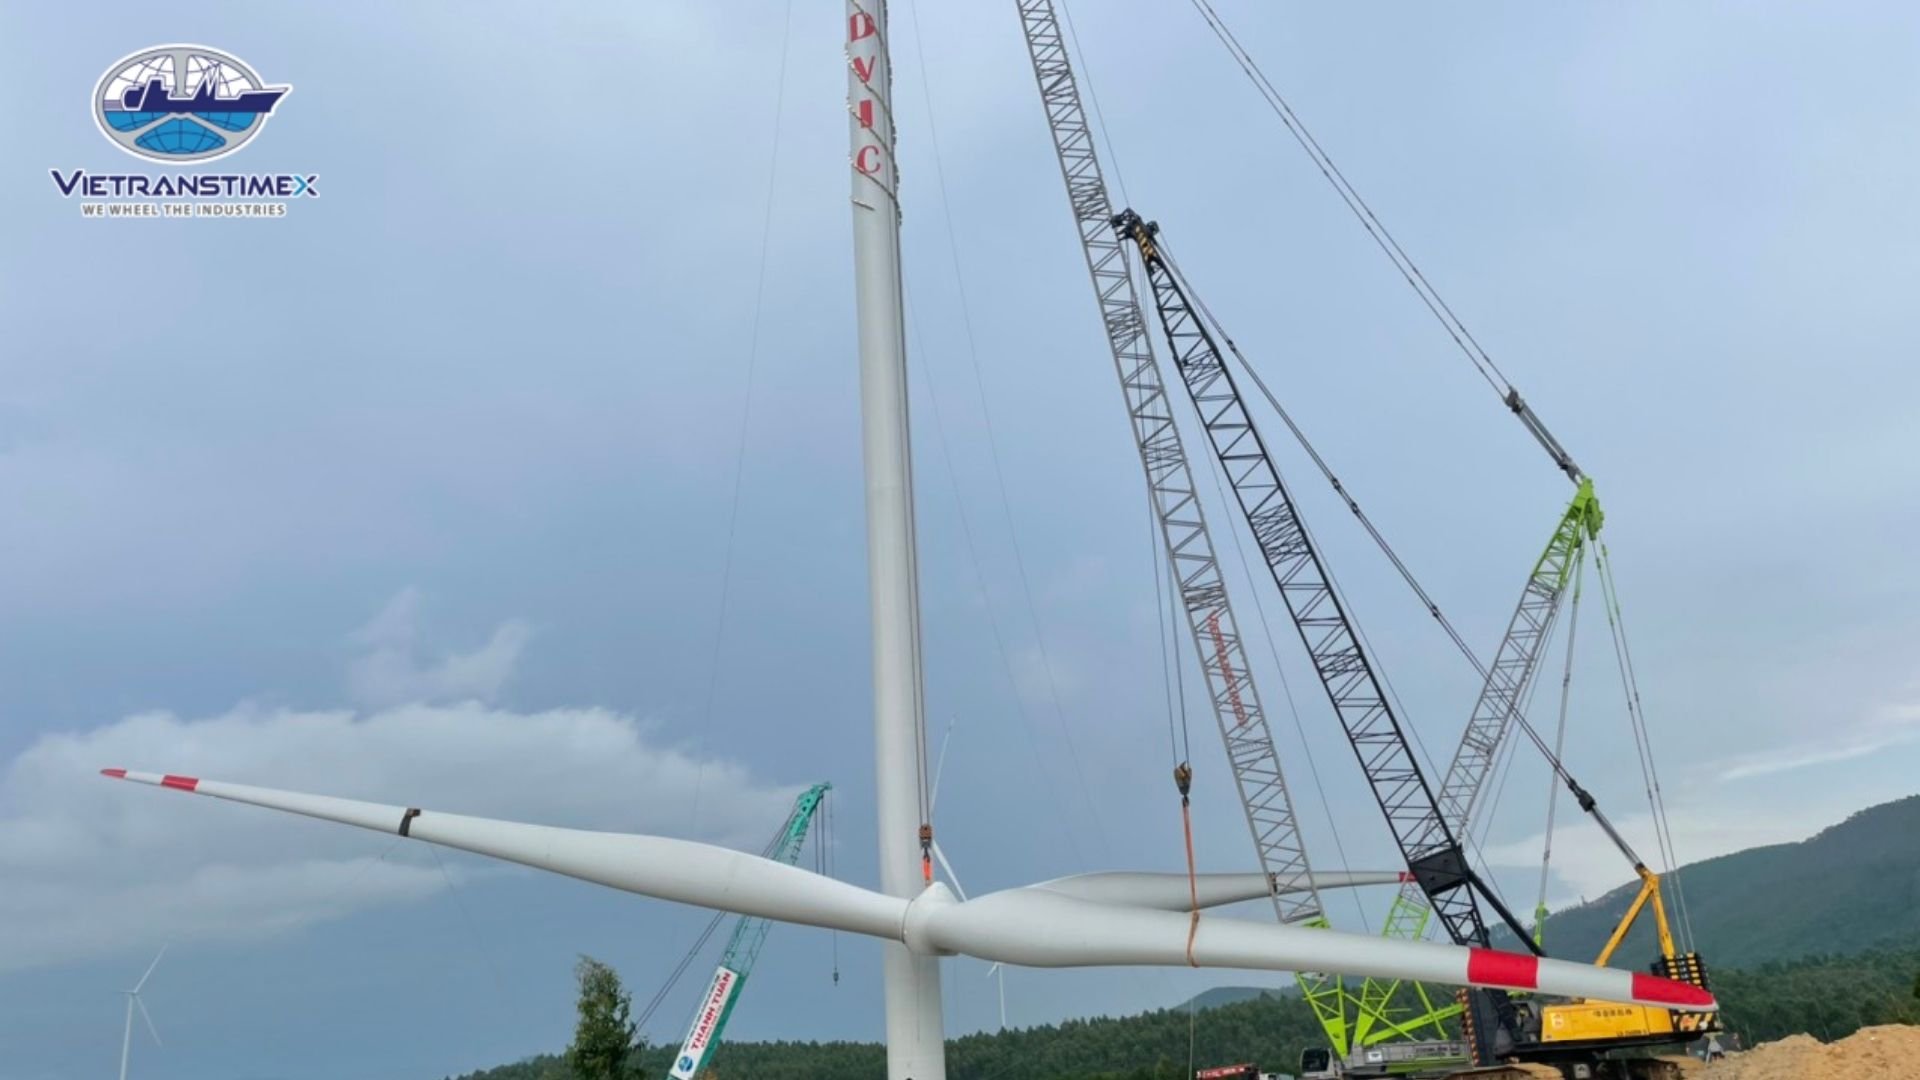 Cuu An Wind Farm Project (2021, 3 sets of WTG)